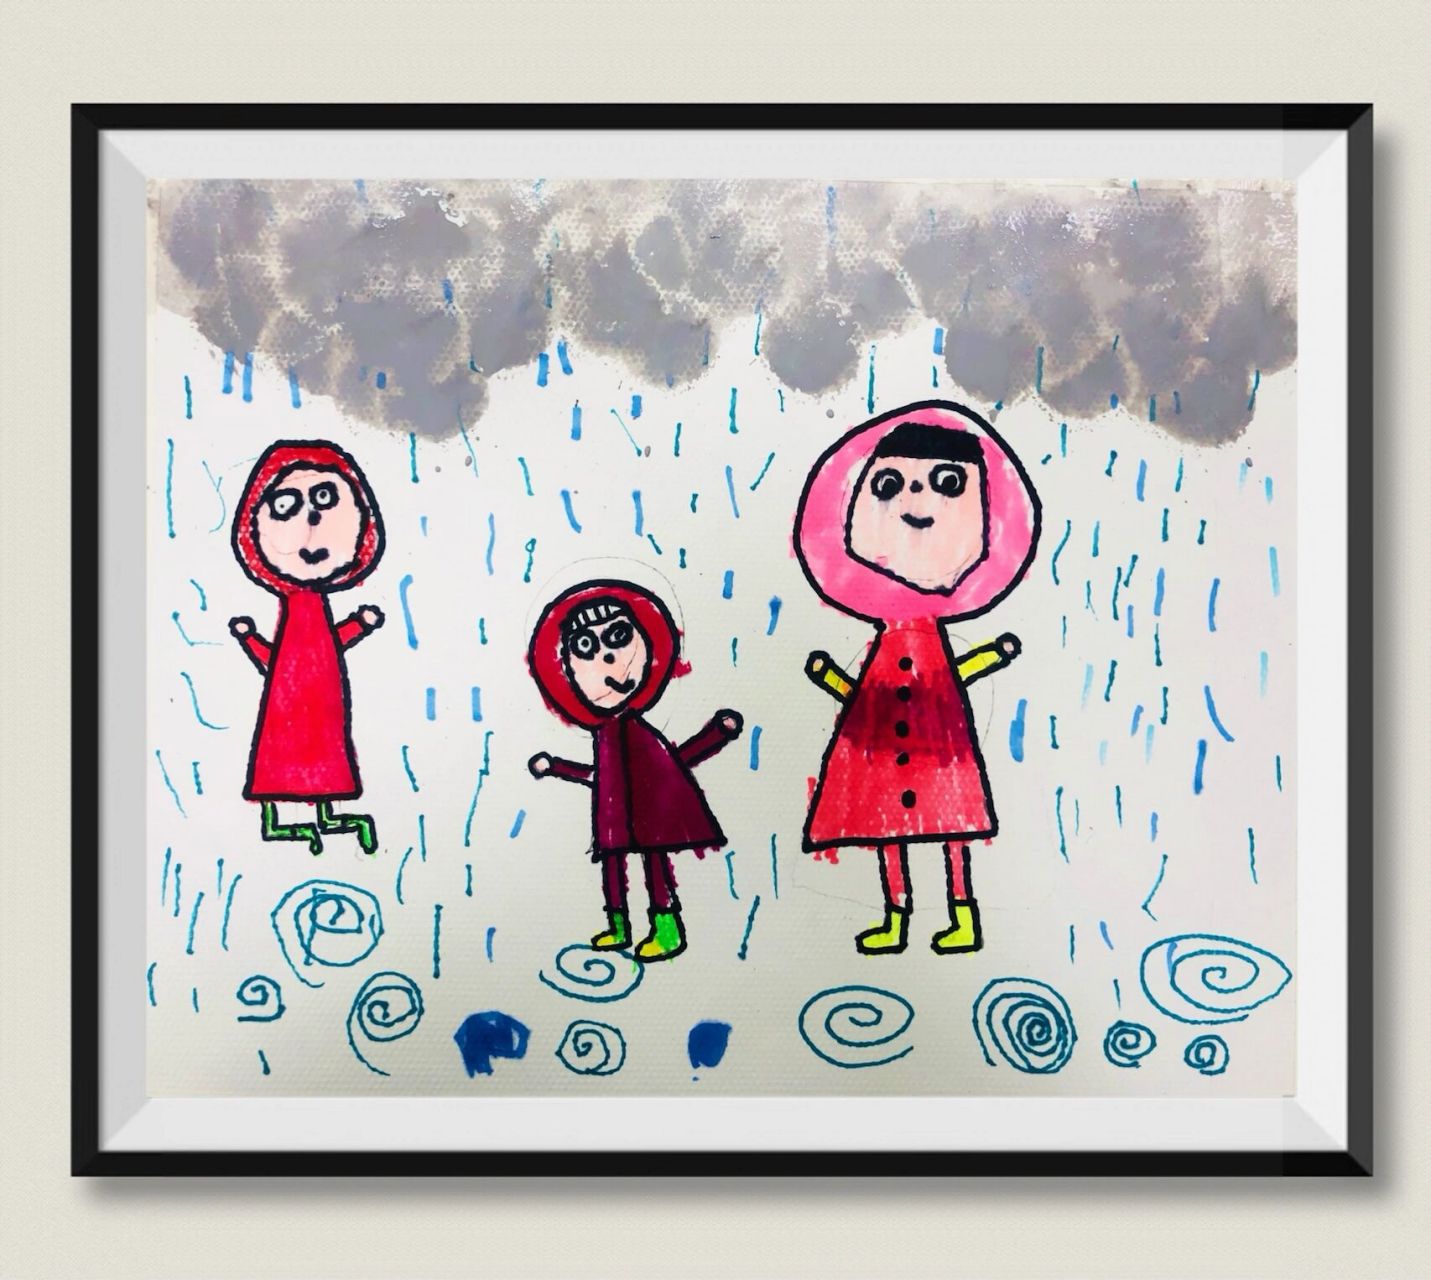 水粉画 马克笔画 幼儿班作品名称《下雨天》 97知识点:通过视频了解